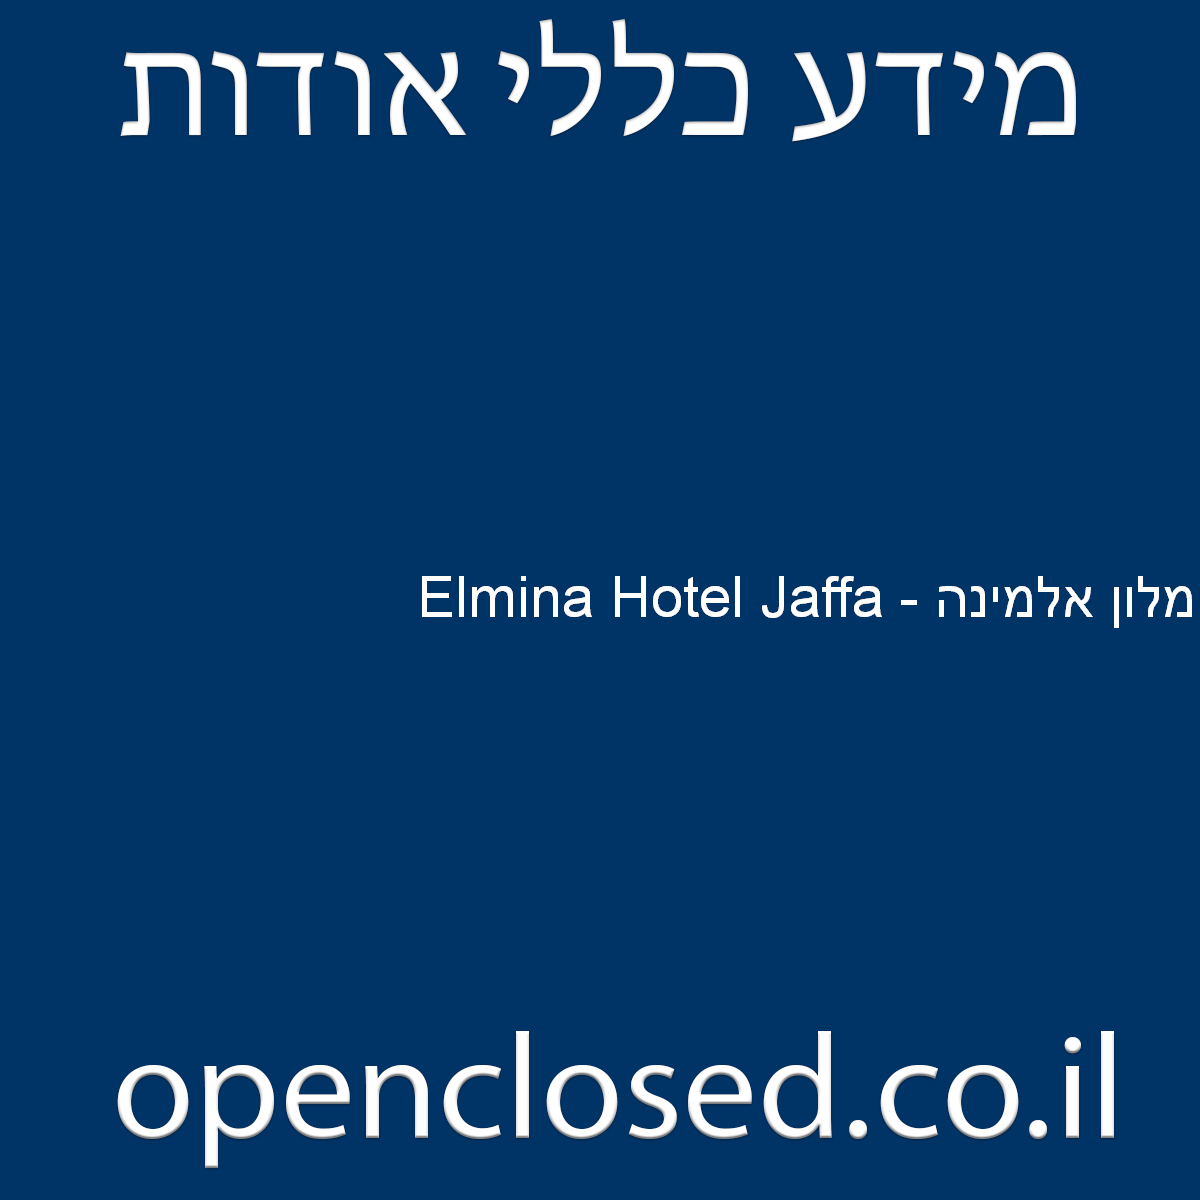 Elmina Hotel Jaffa – מלון אלמינה